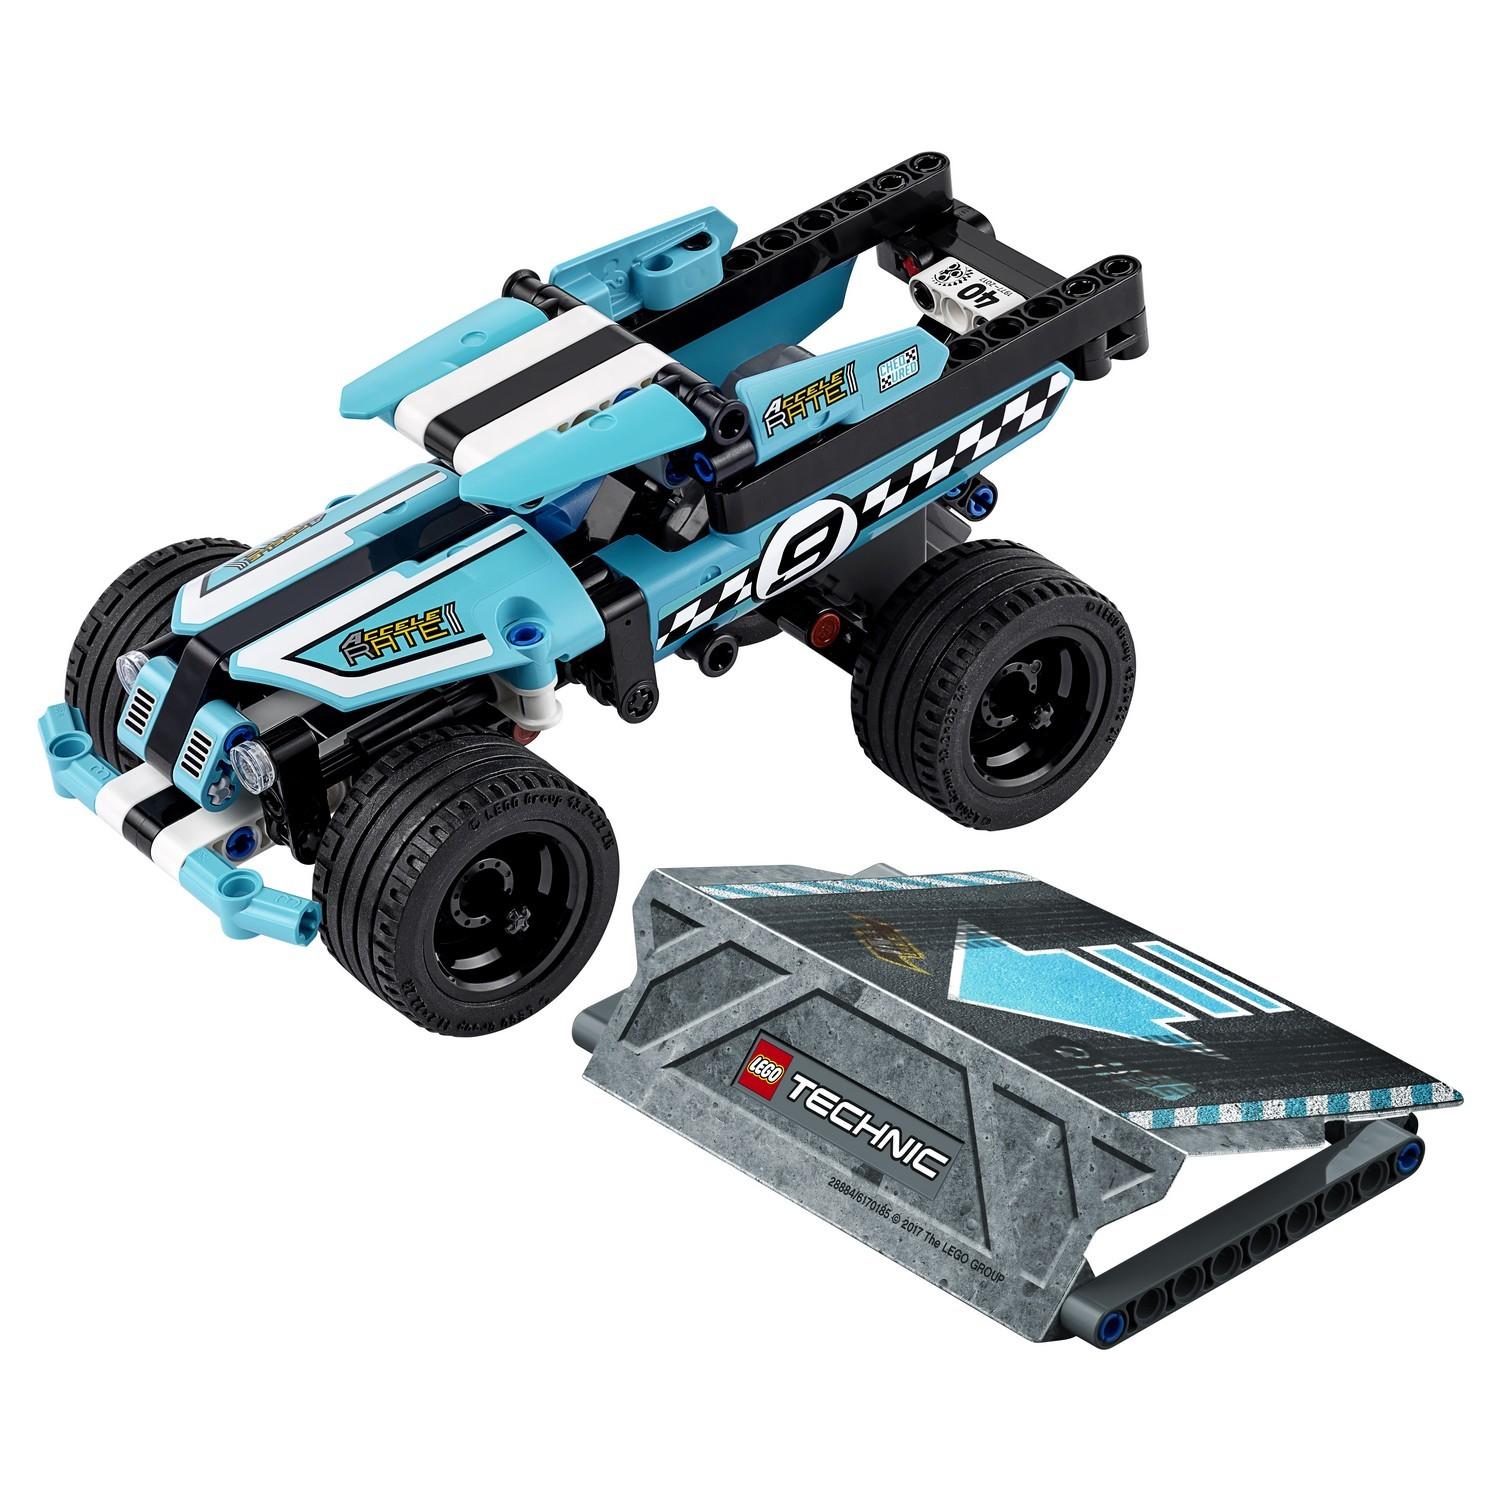 Lego Technic 42059 Трюковой грузовик